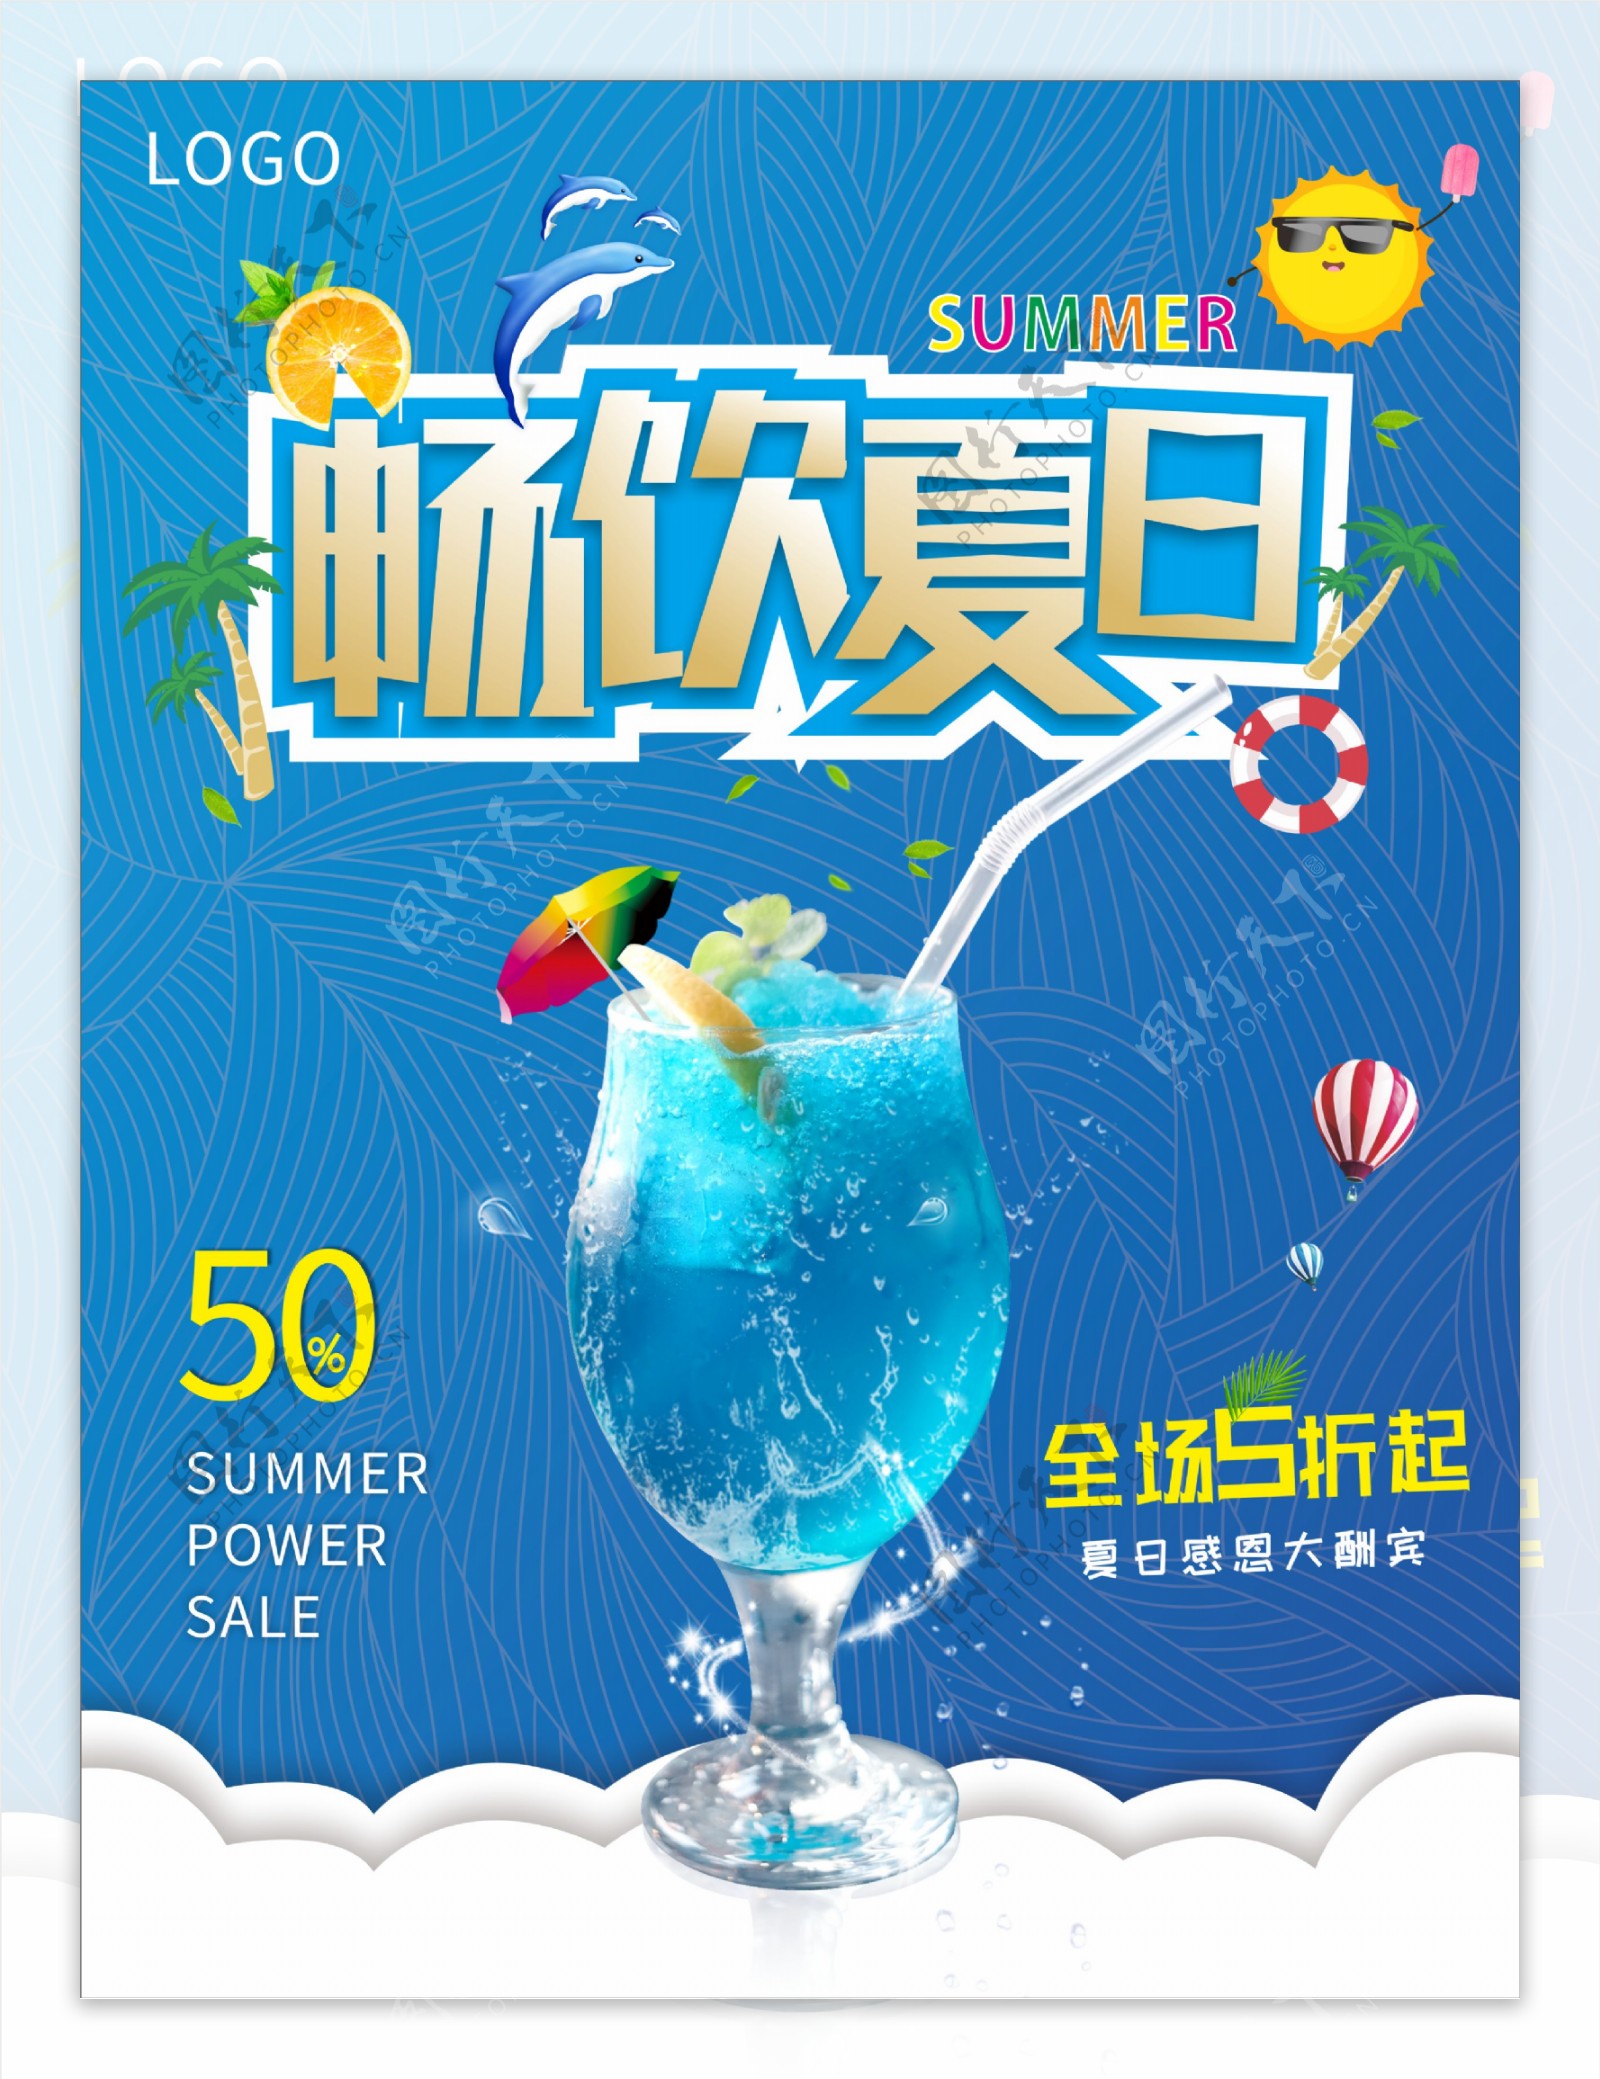 蓝色背景甜品美食夏季沙冰海报CDR简约